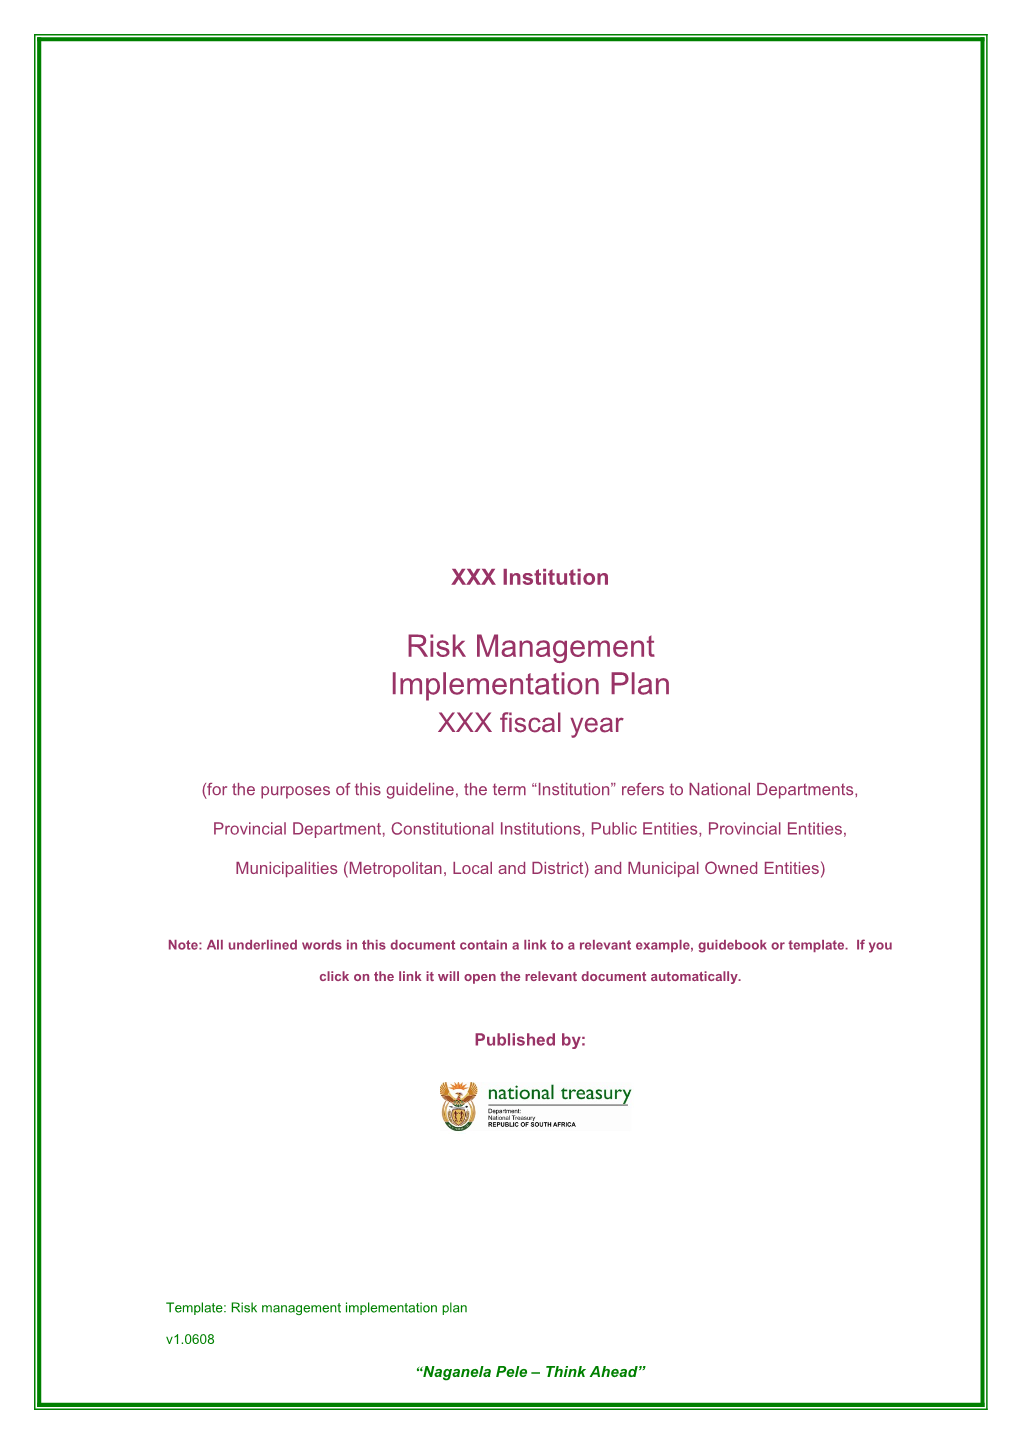 Risk Management Implementation Plan